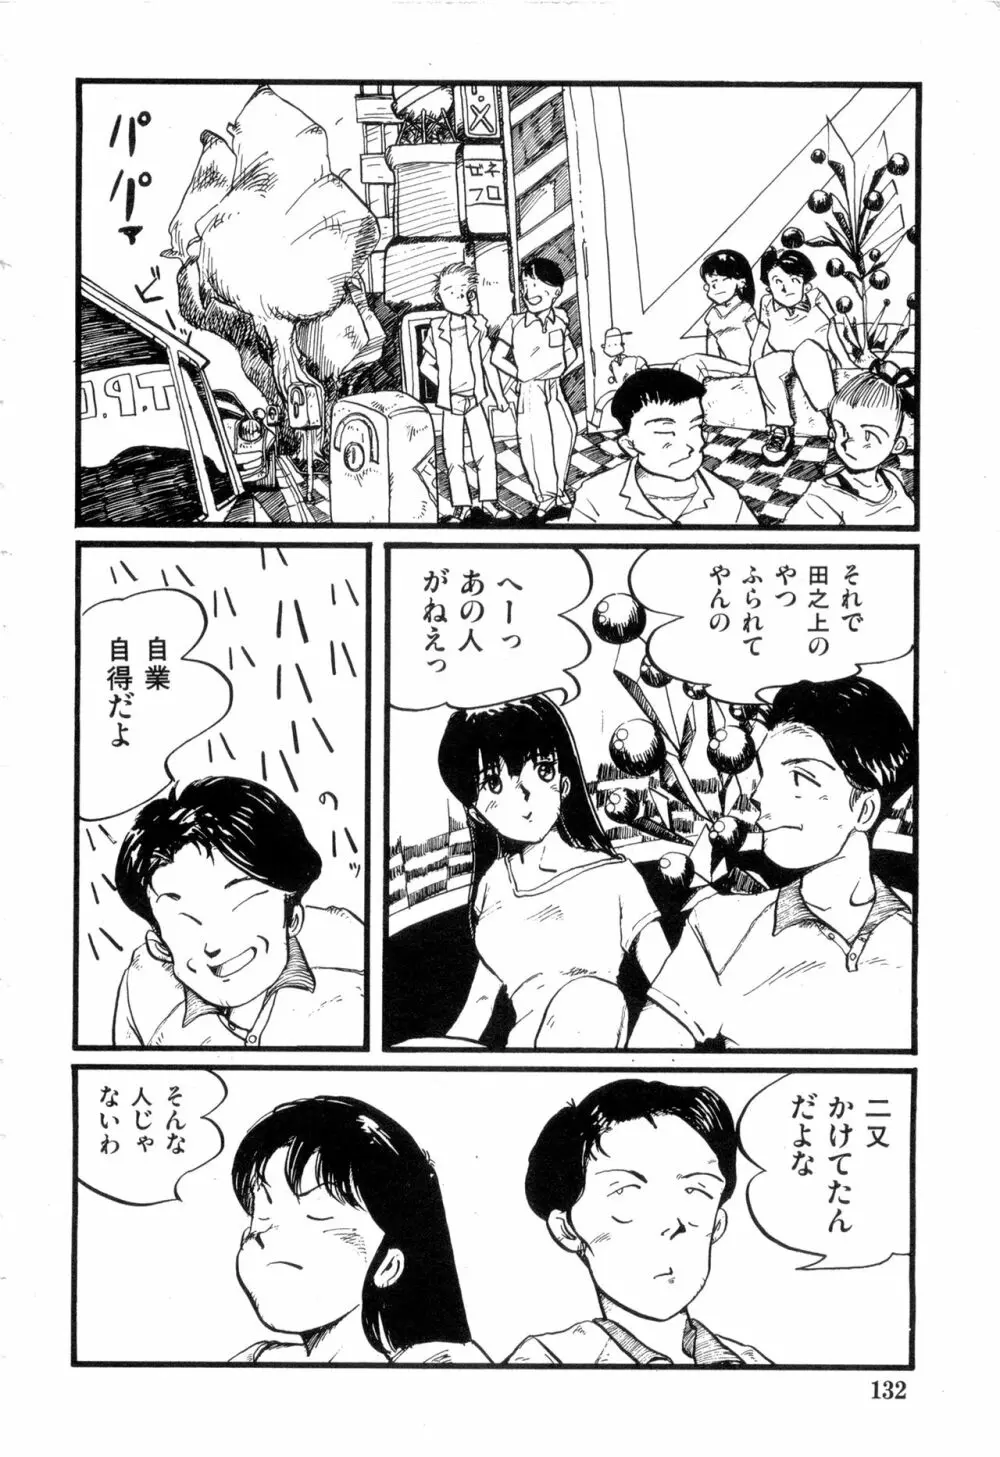 WAKE UP!! がんばれ婦警さんコミック VOL.2 132ページ